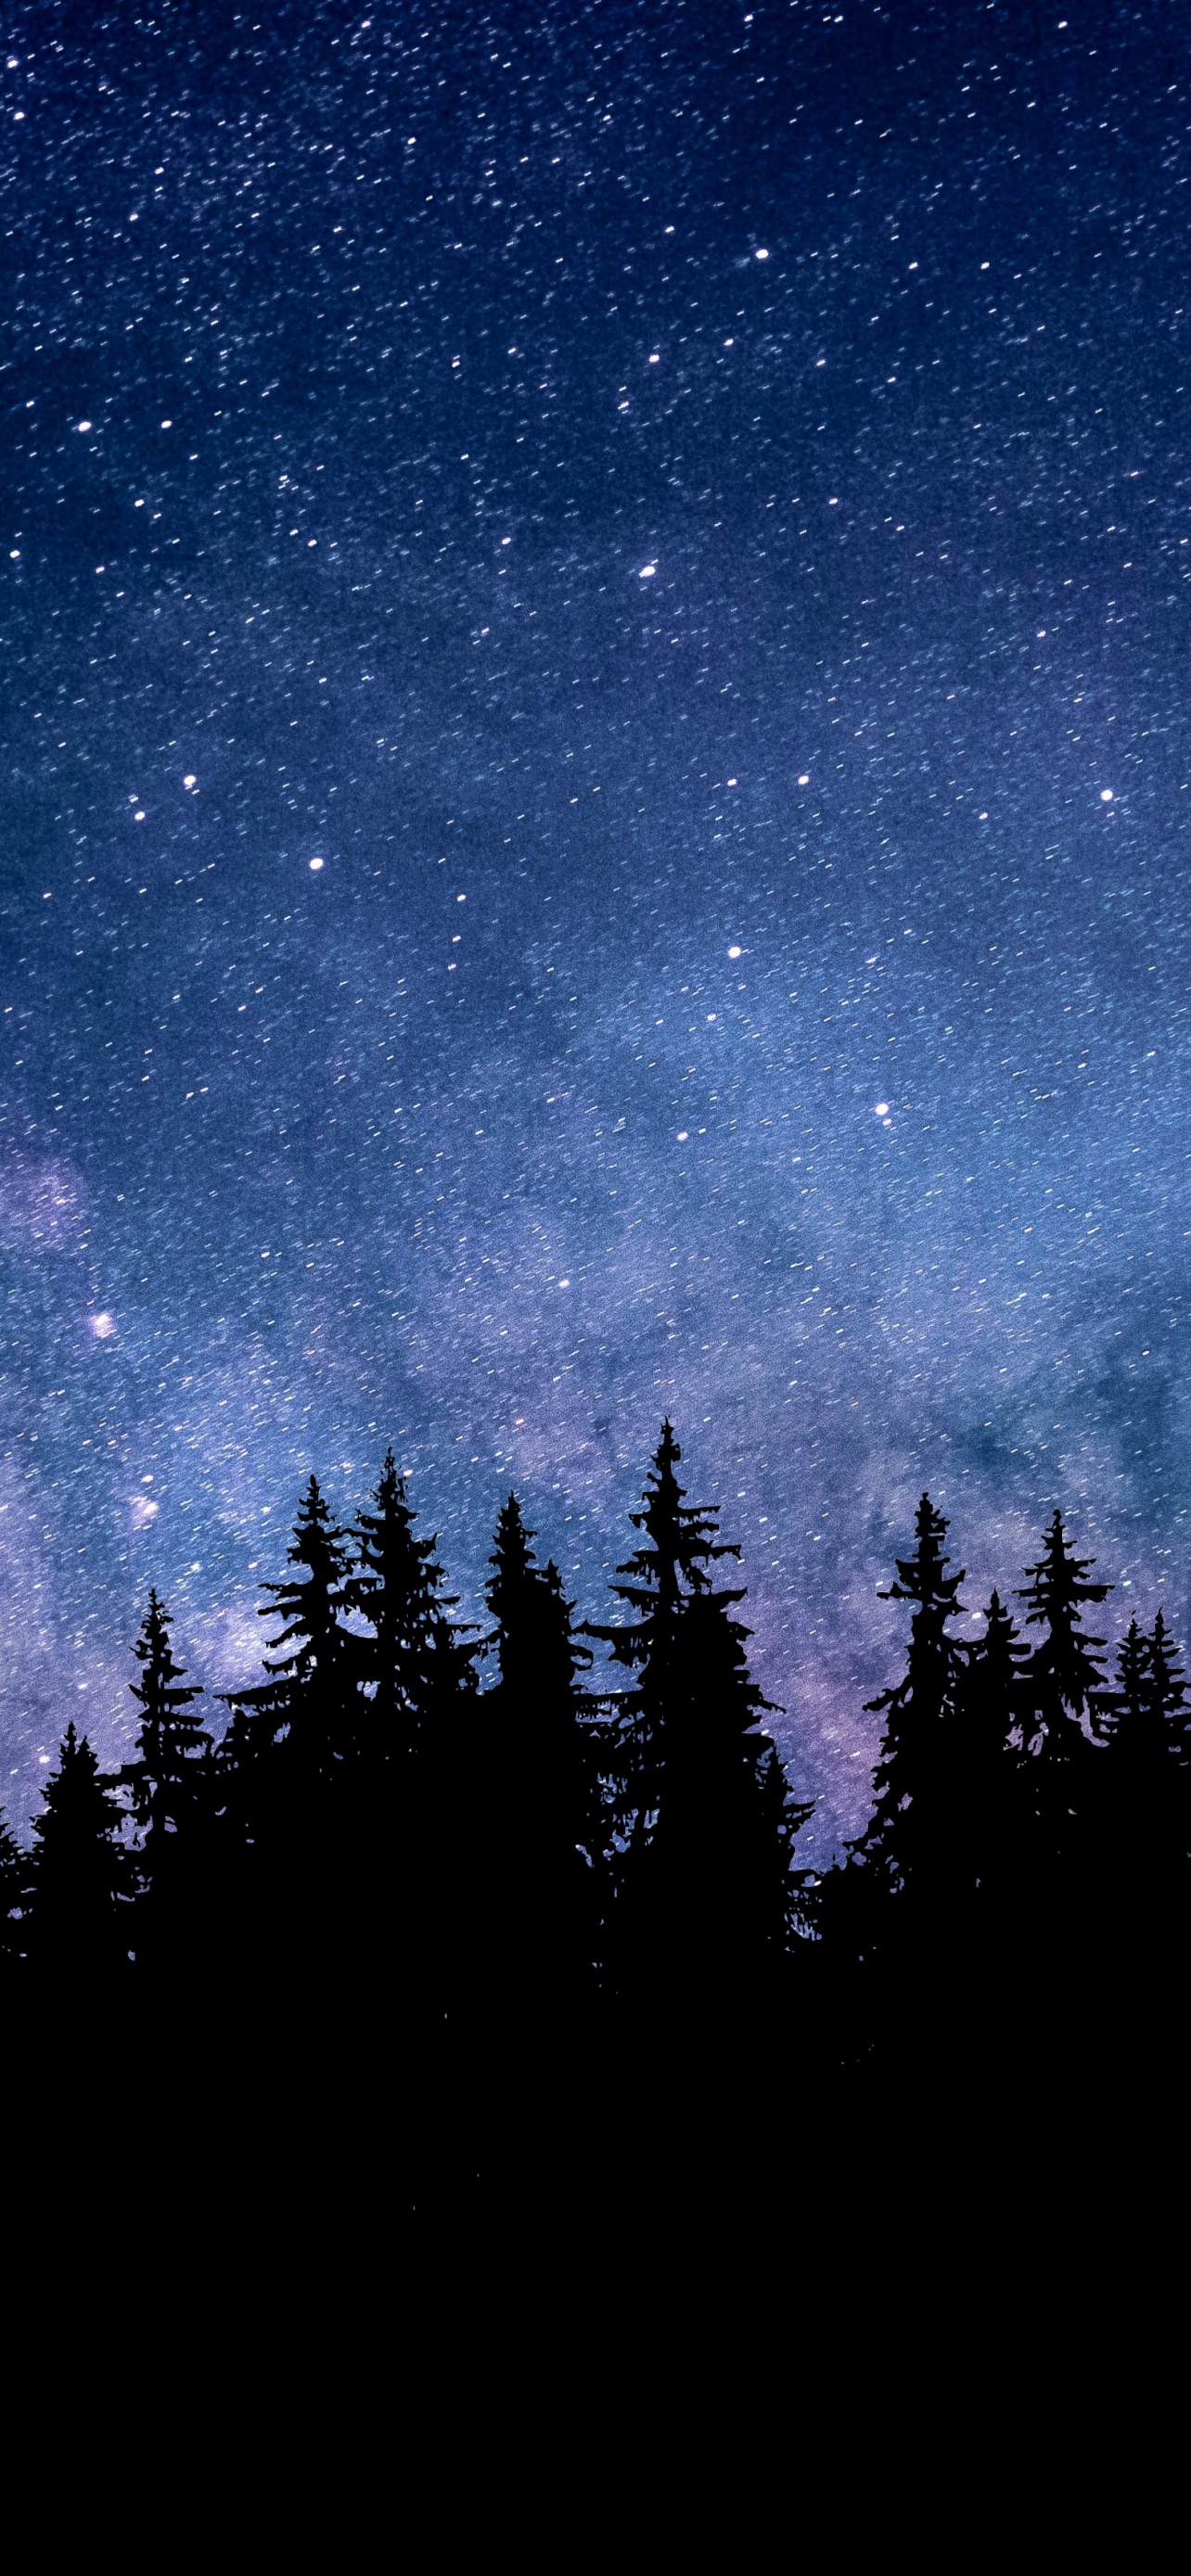 Đôi khi, chúng ta cần một chút đề cao, thời gian để ta ngắm nhìn bầu trời đầy sao trong rừng. Bức hình nền đêm sao rừng sẽ giúp bạn tìm lại sự bình yên và cảm nhận vẻ đẹp thật sự của thiên nhiên.